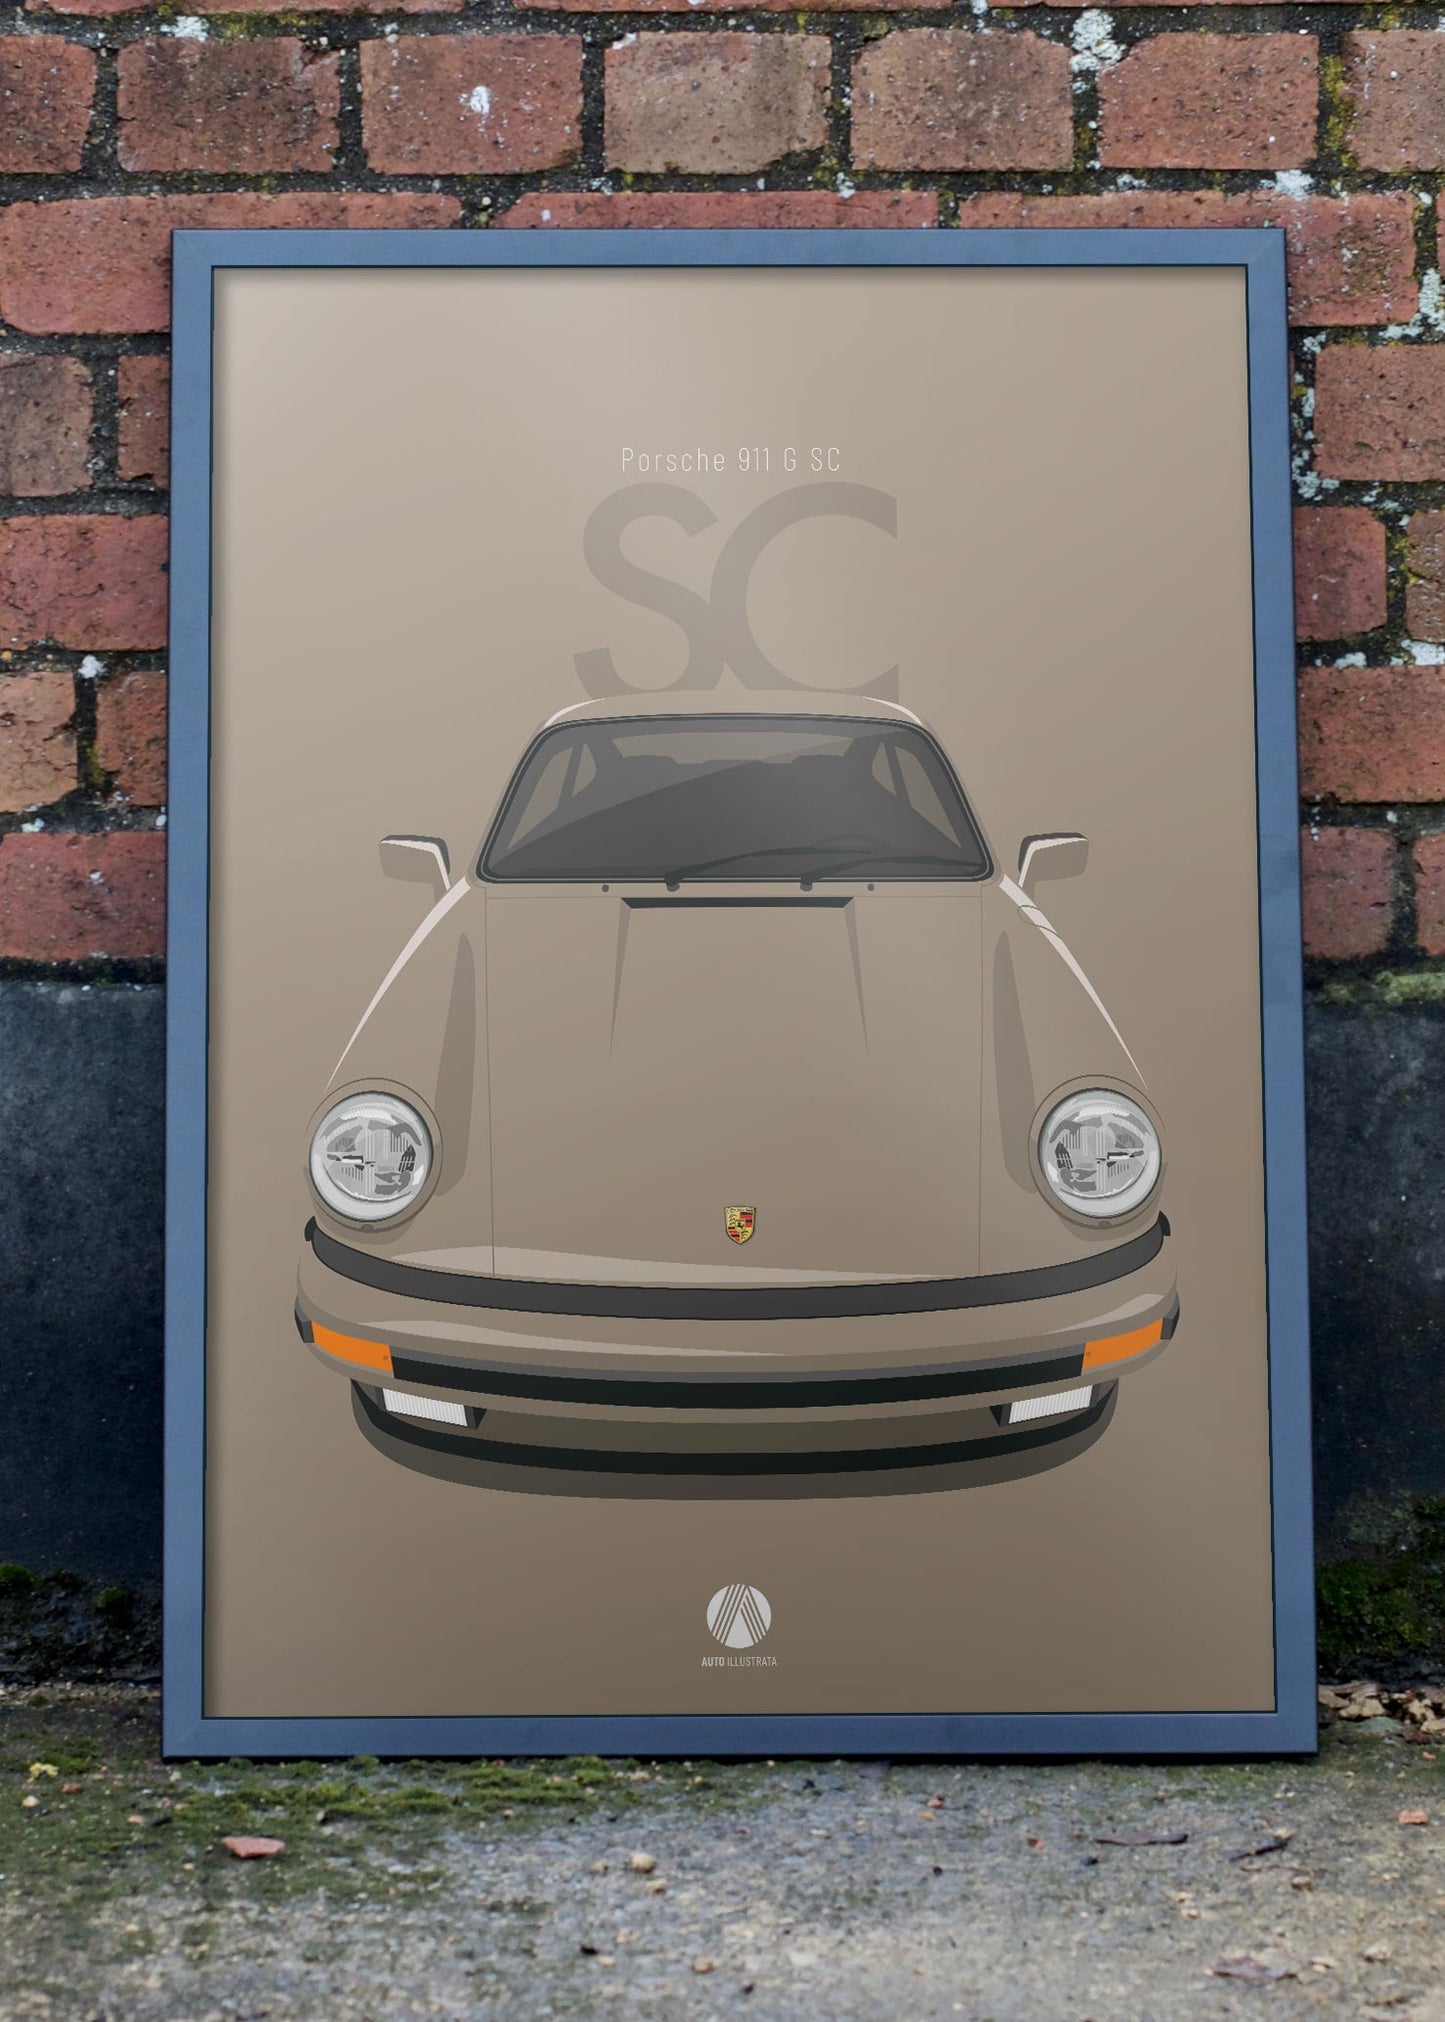 1983 Porsche 911 SC - 966 Hellbronze - poster print